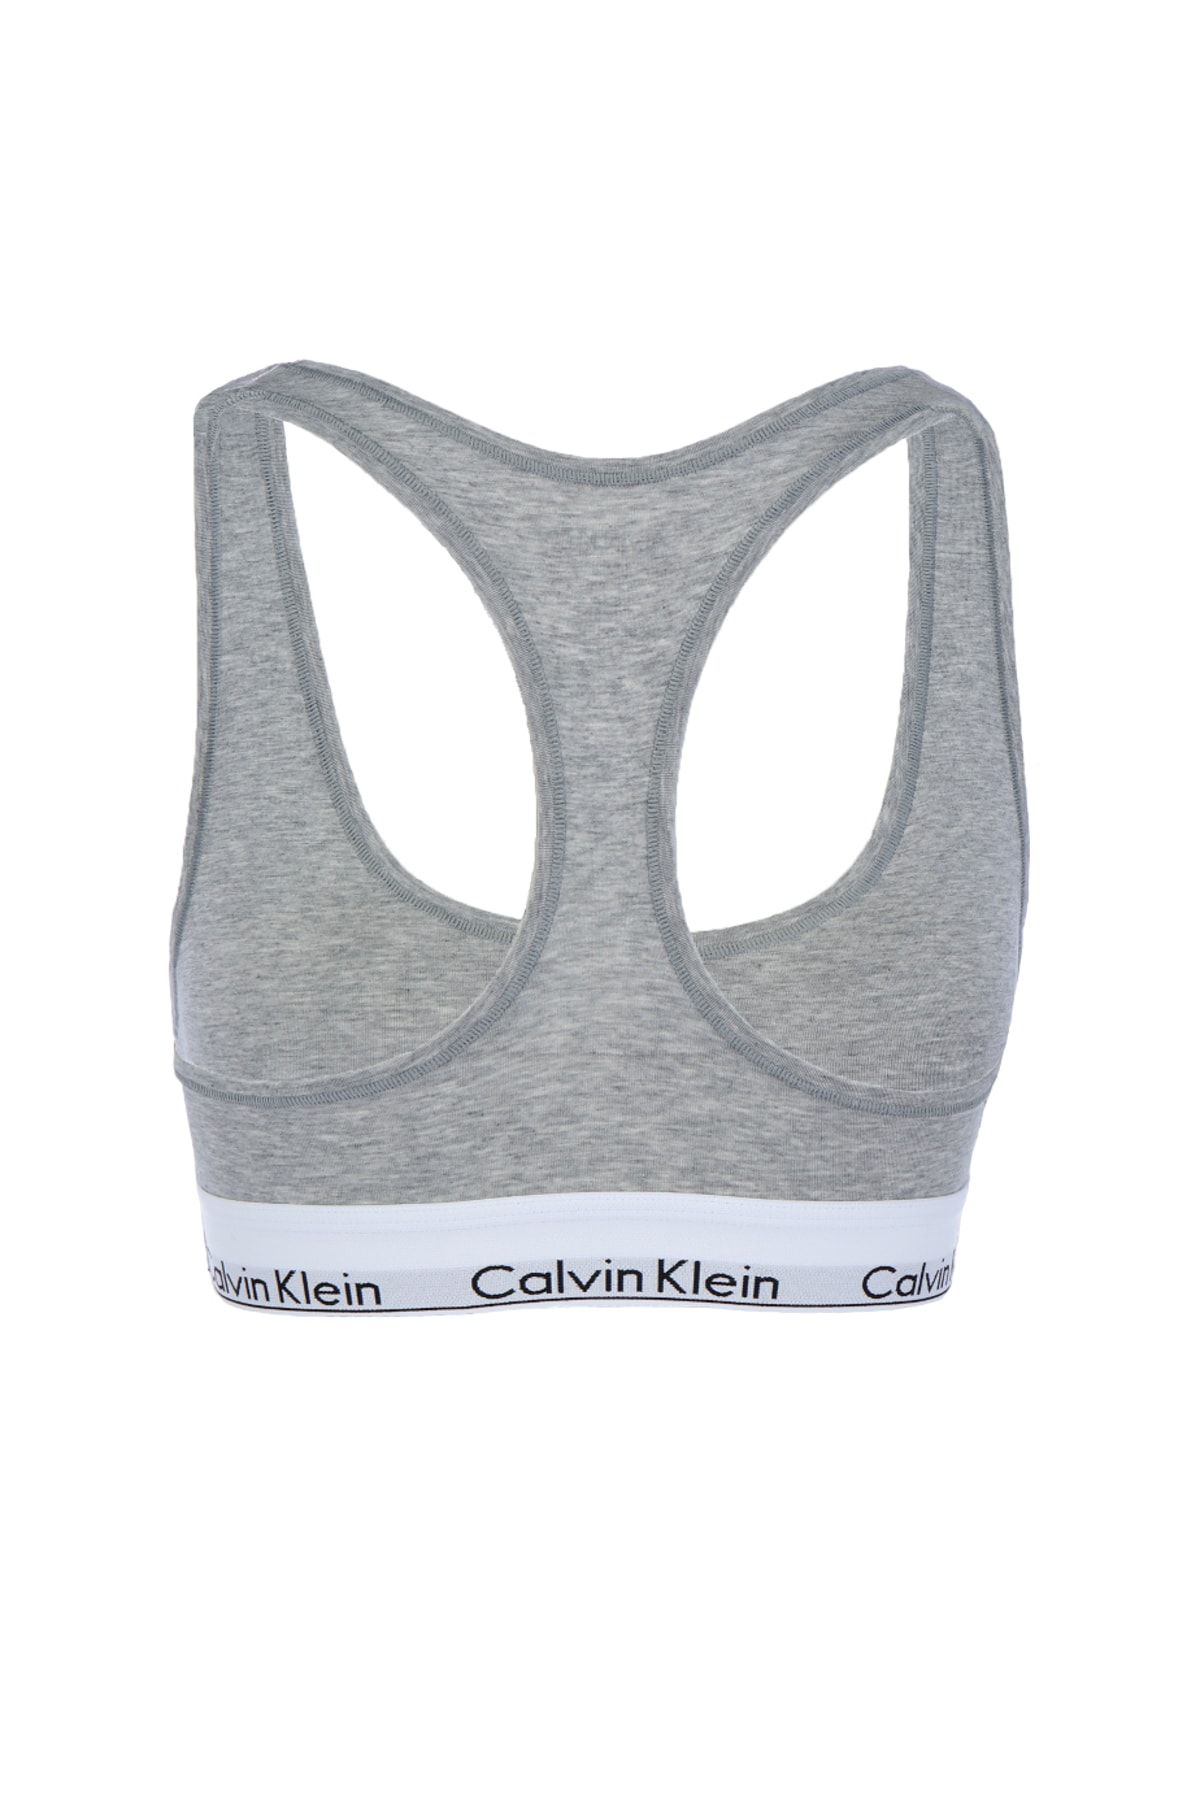 Bras Calvin Klein Modern Cotton Holiday Unlined Bralette Hemisphere Blue  Heather